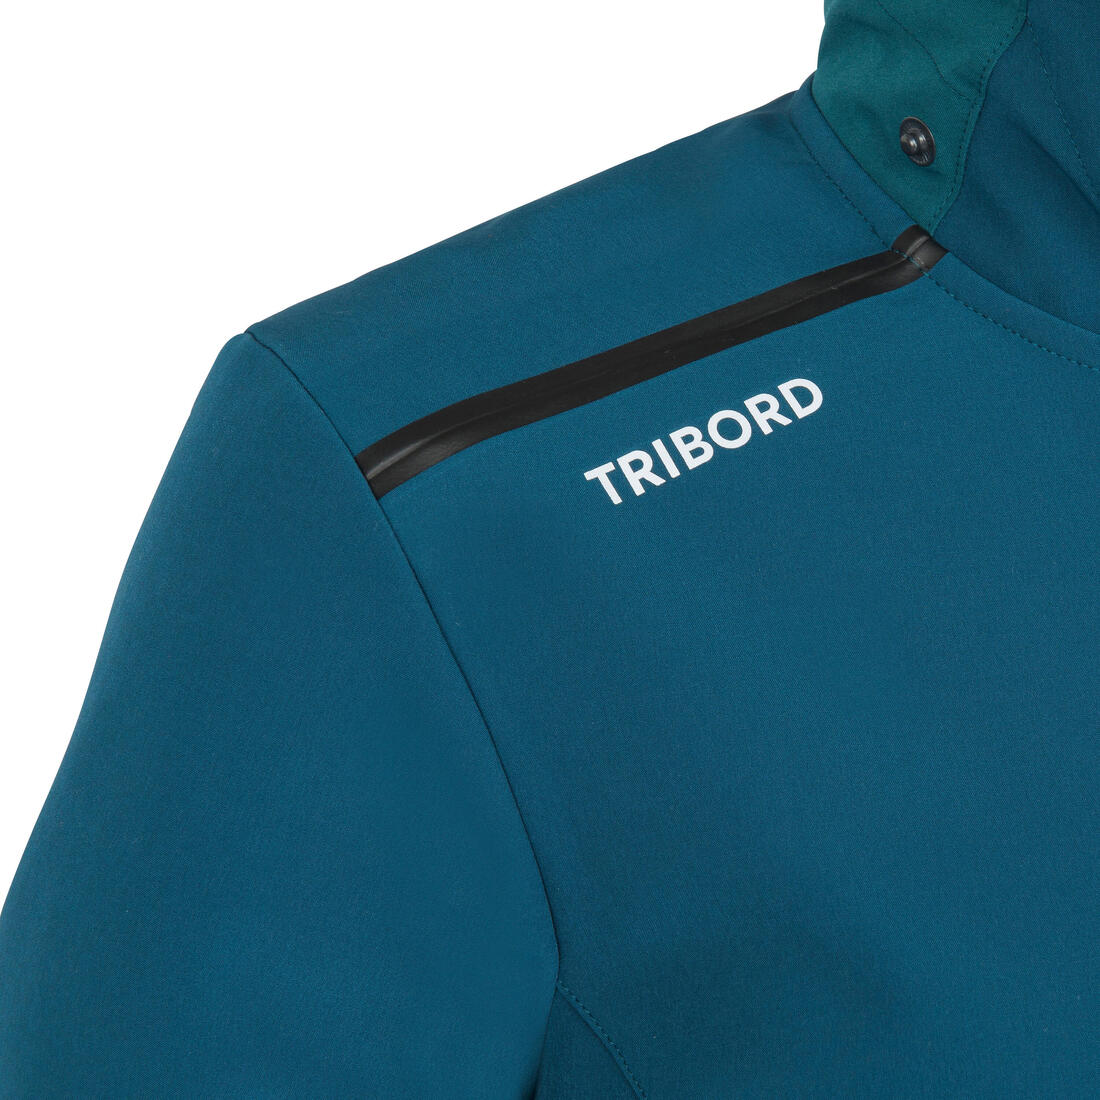 TRIBORD (トリボード) ヨット・セーリング ソフトシェル ジャケット レディース